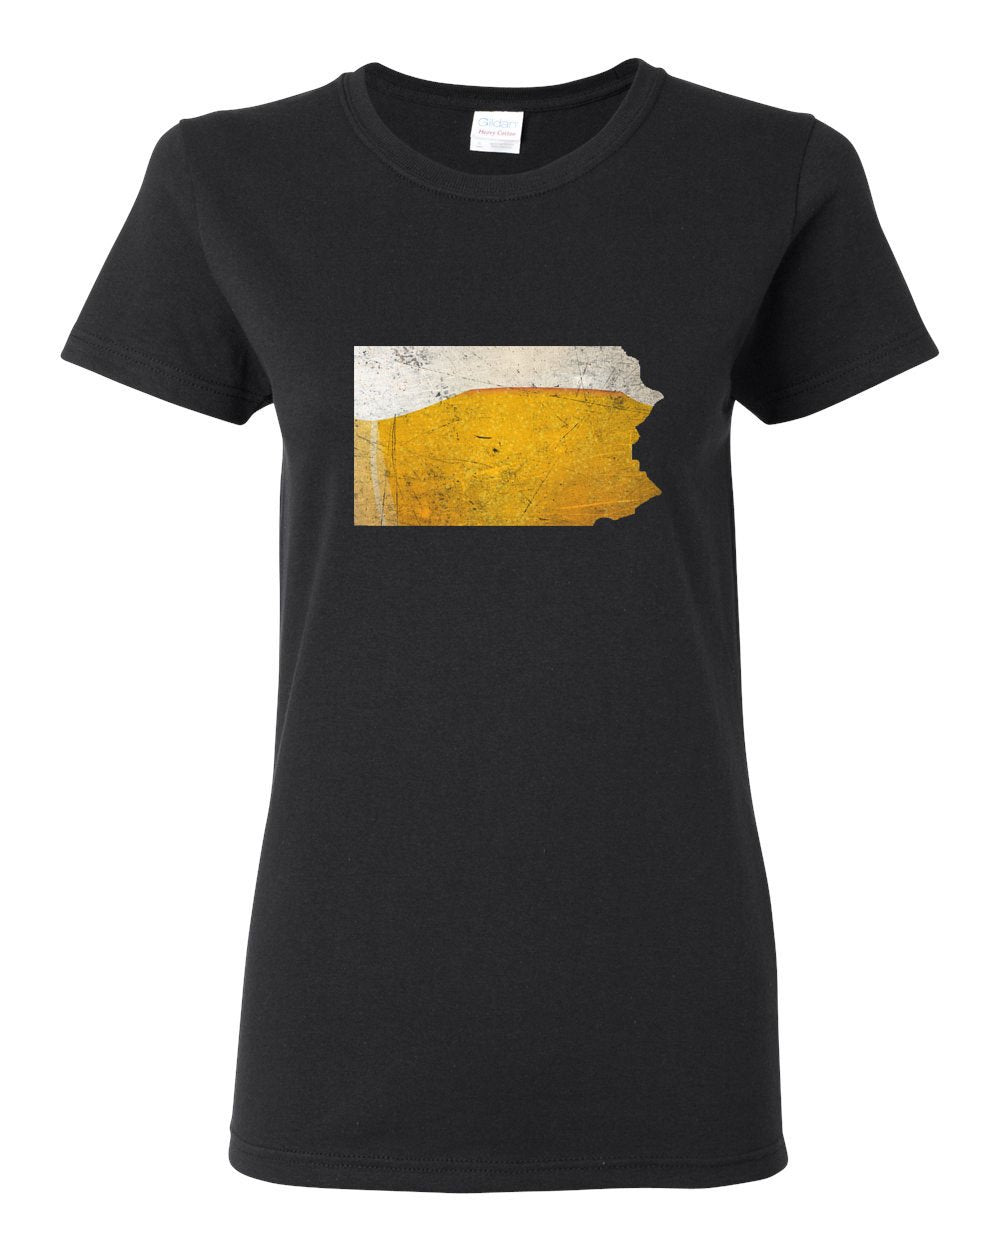 PA Beer LADIES Missy-Fit T-Shirt